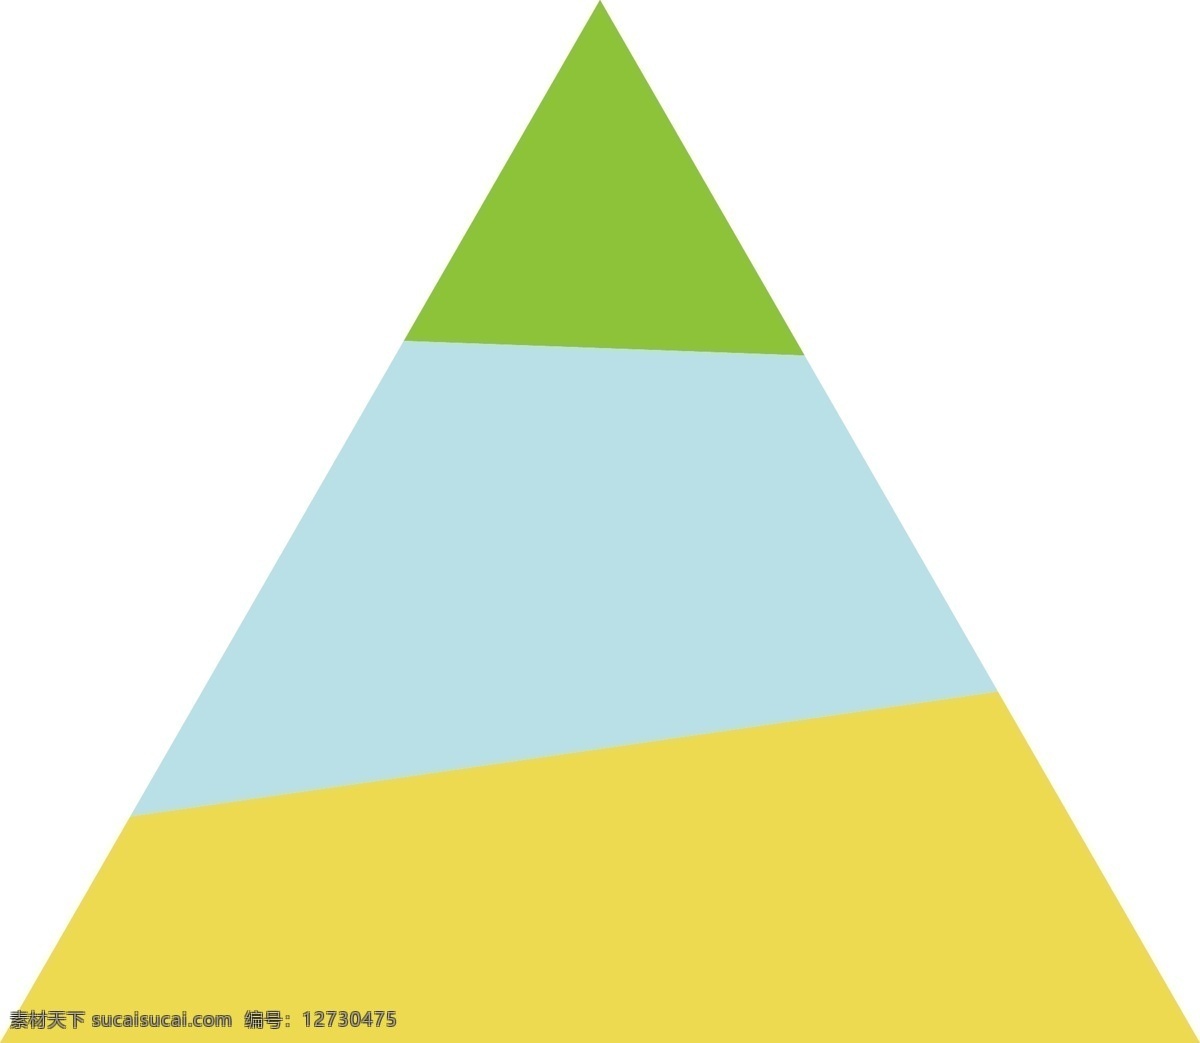 小 清新 浅色 系 分层 三角形 正三角形 等边三角形 黄色 浅绿色 蓝色 阶级图标装饰 小清新 食物成分划分